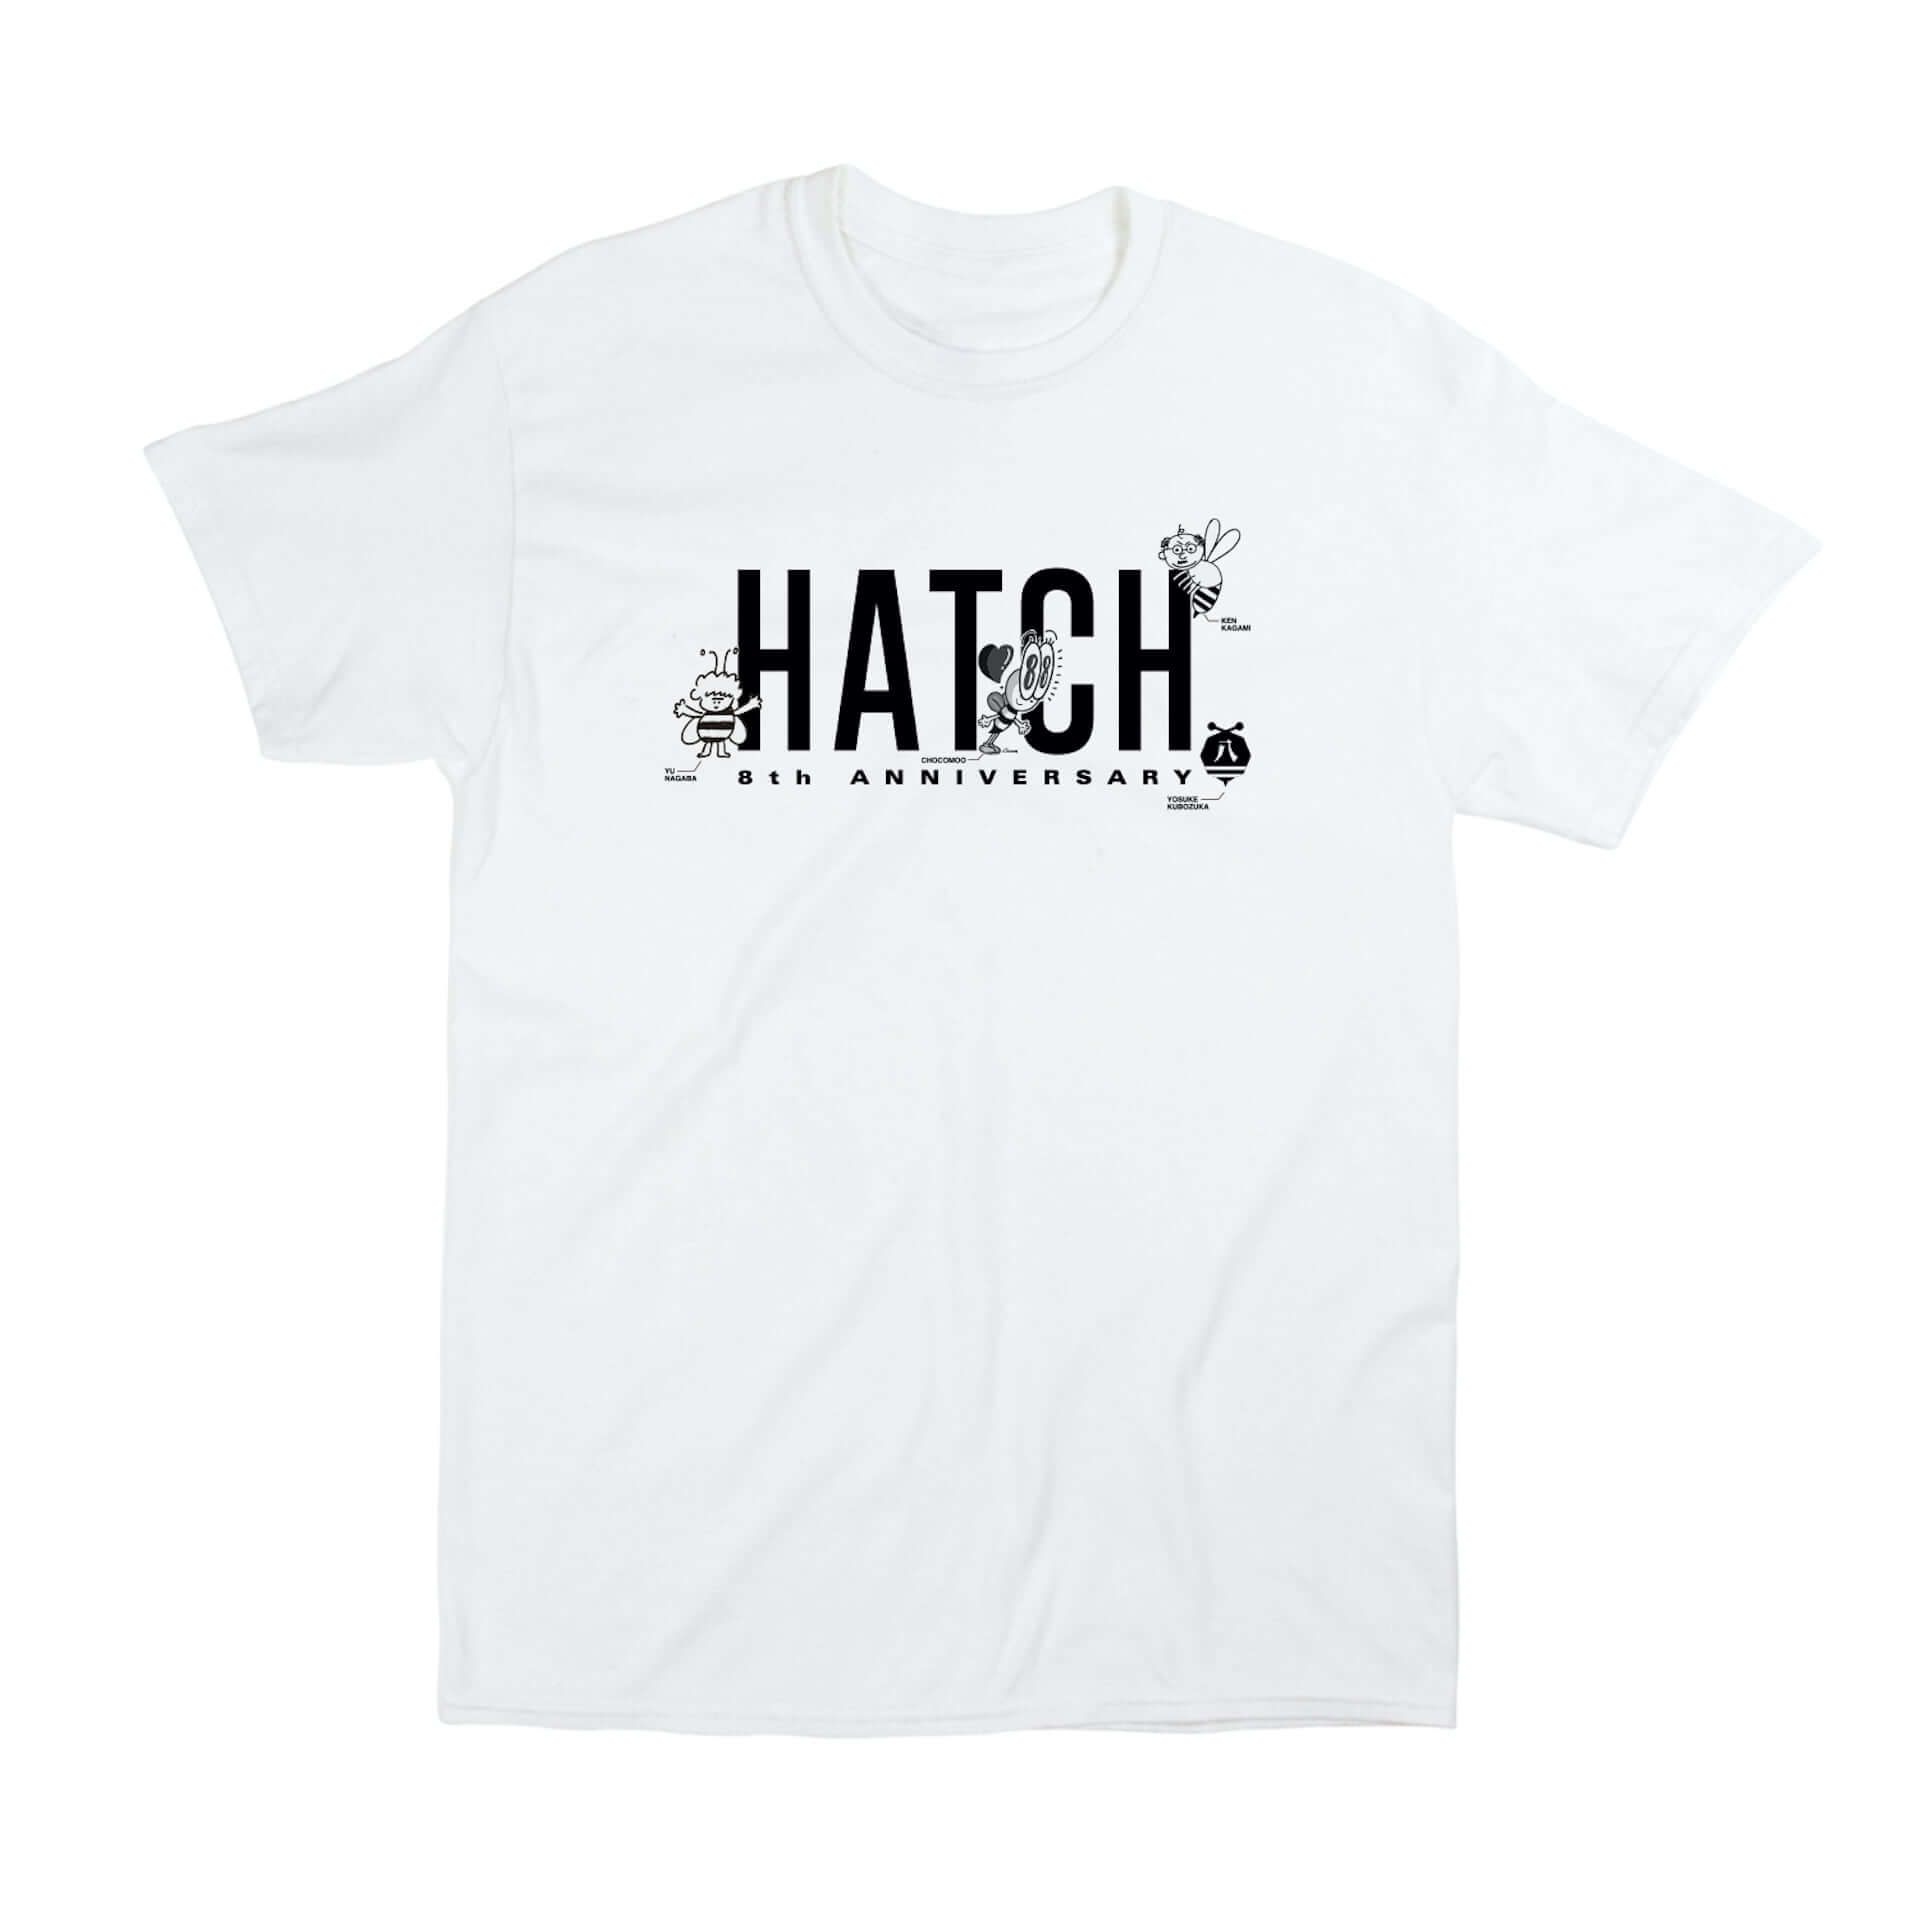 窪塚洋介、長場雄、加賀美健、JUN WATANABEら13名のデザインが1枚に集結！「HATCH」8周年記念Tシャツが登場 Qetic